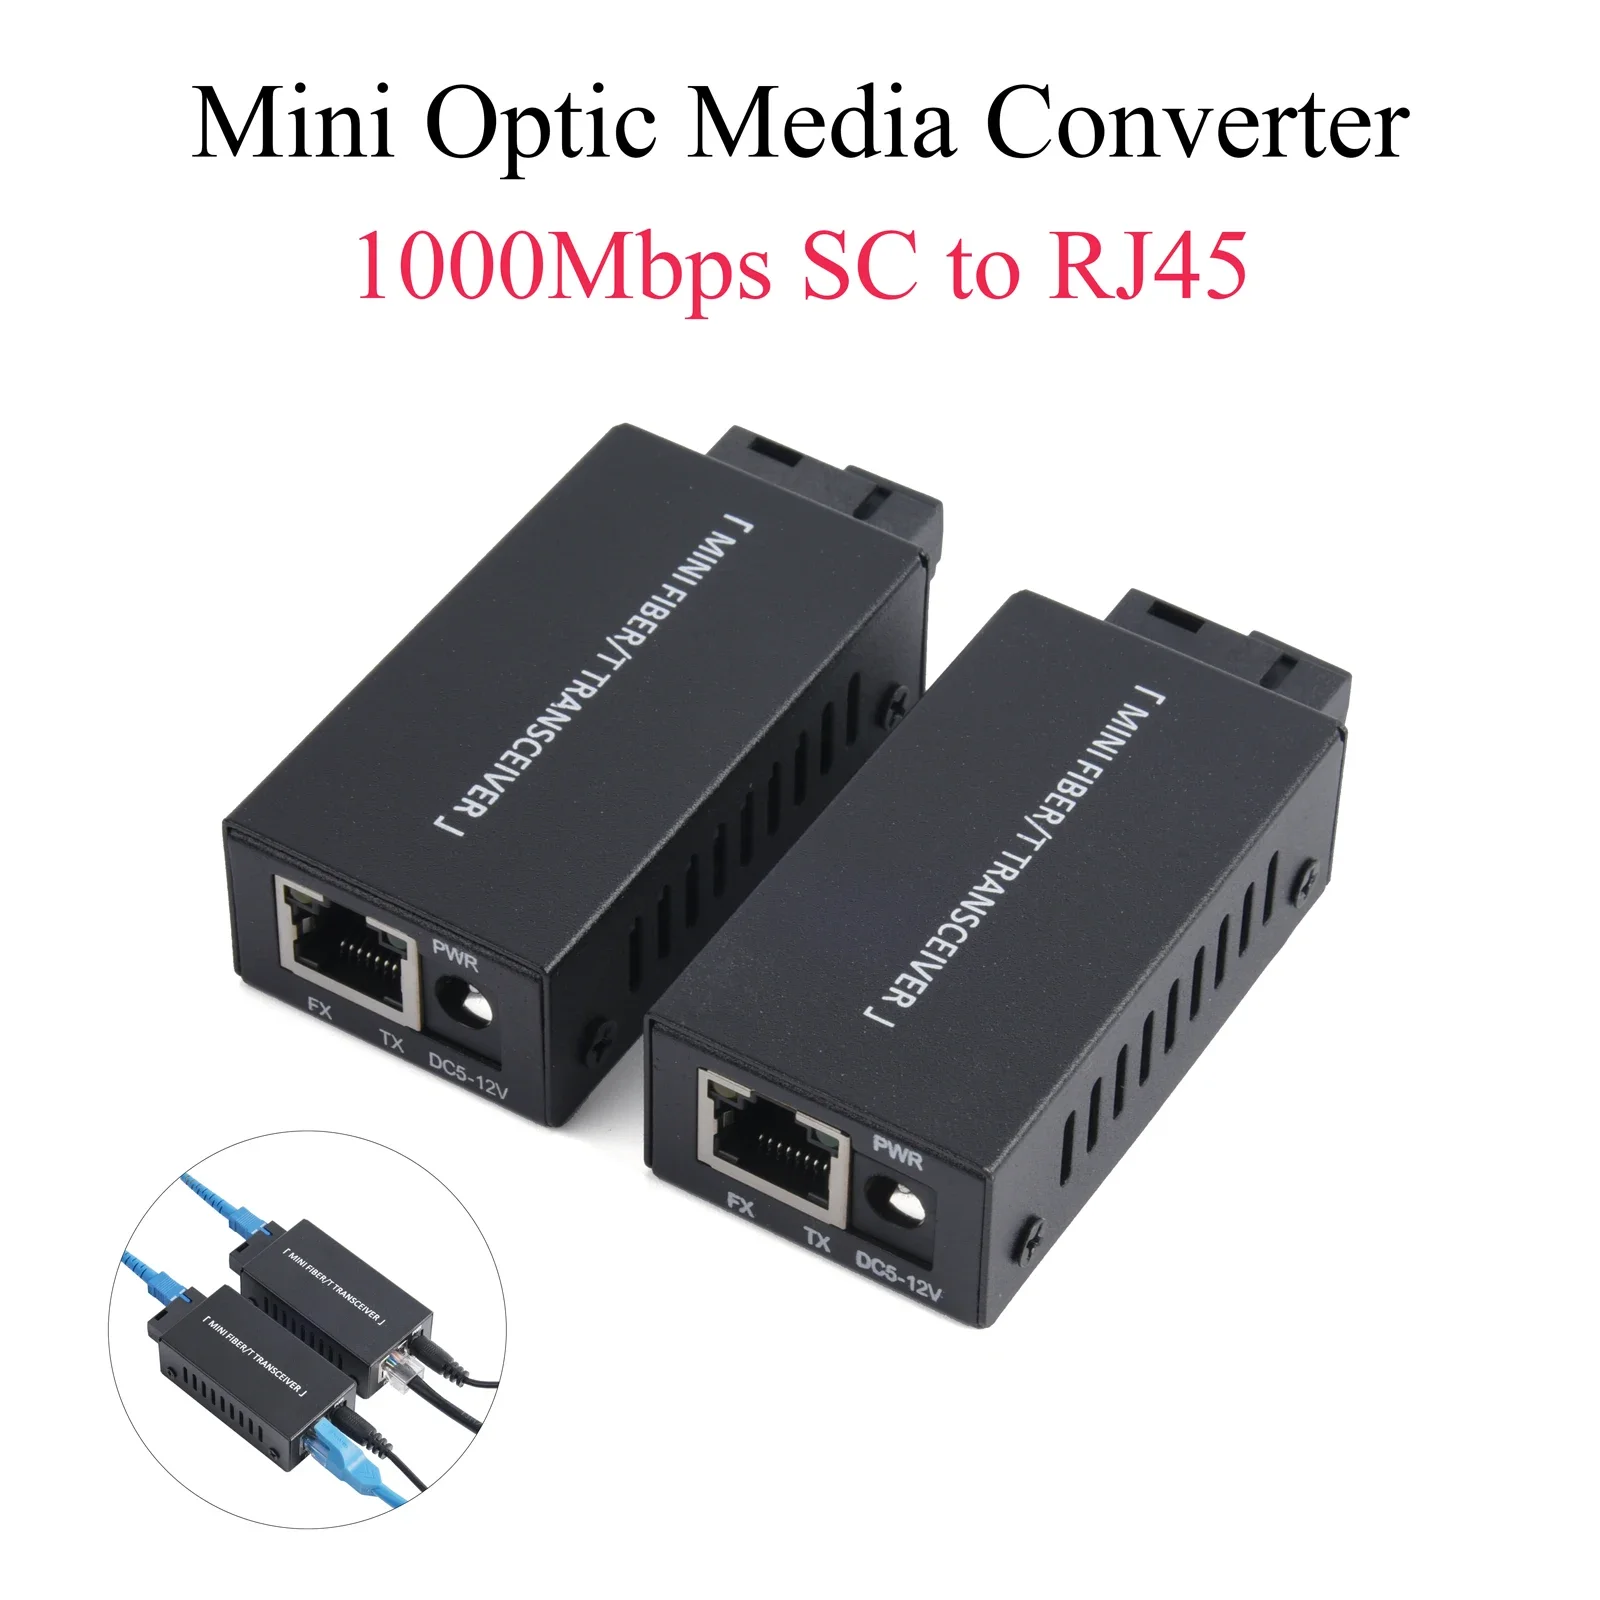 1 Pair Mini Gigabit Fiber Media Converter 100/1000Mbps Fiber Transceiver SC to RJ45 Ethernet Switch 20Km with Power Adapter